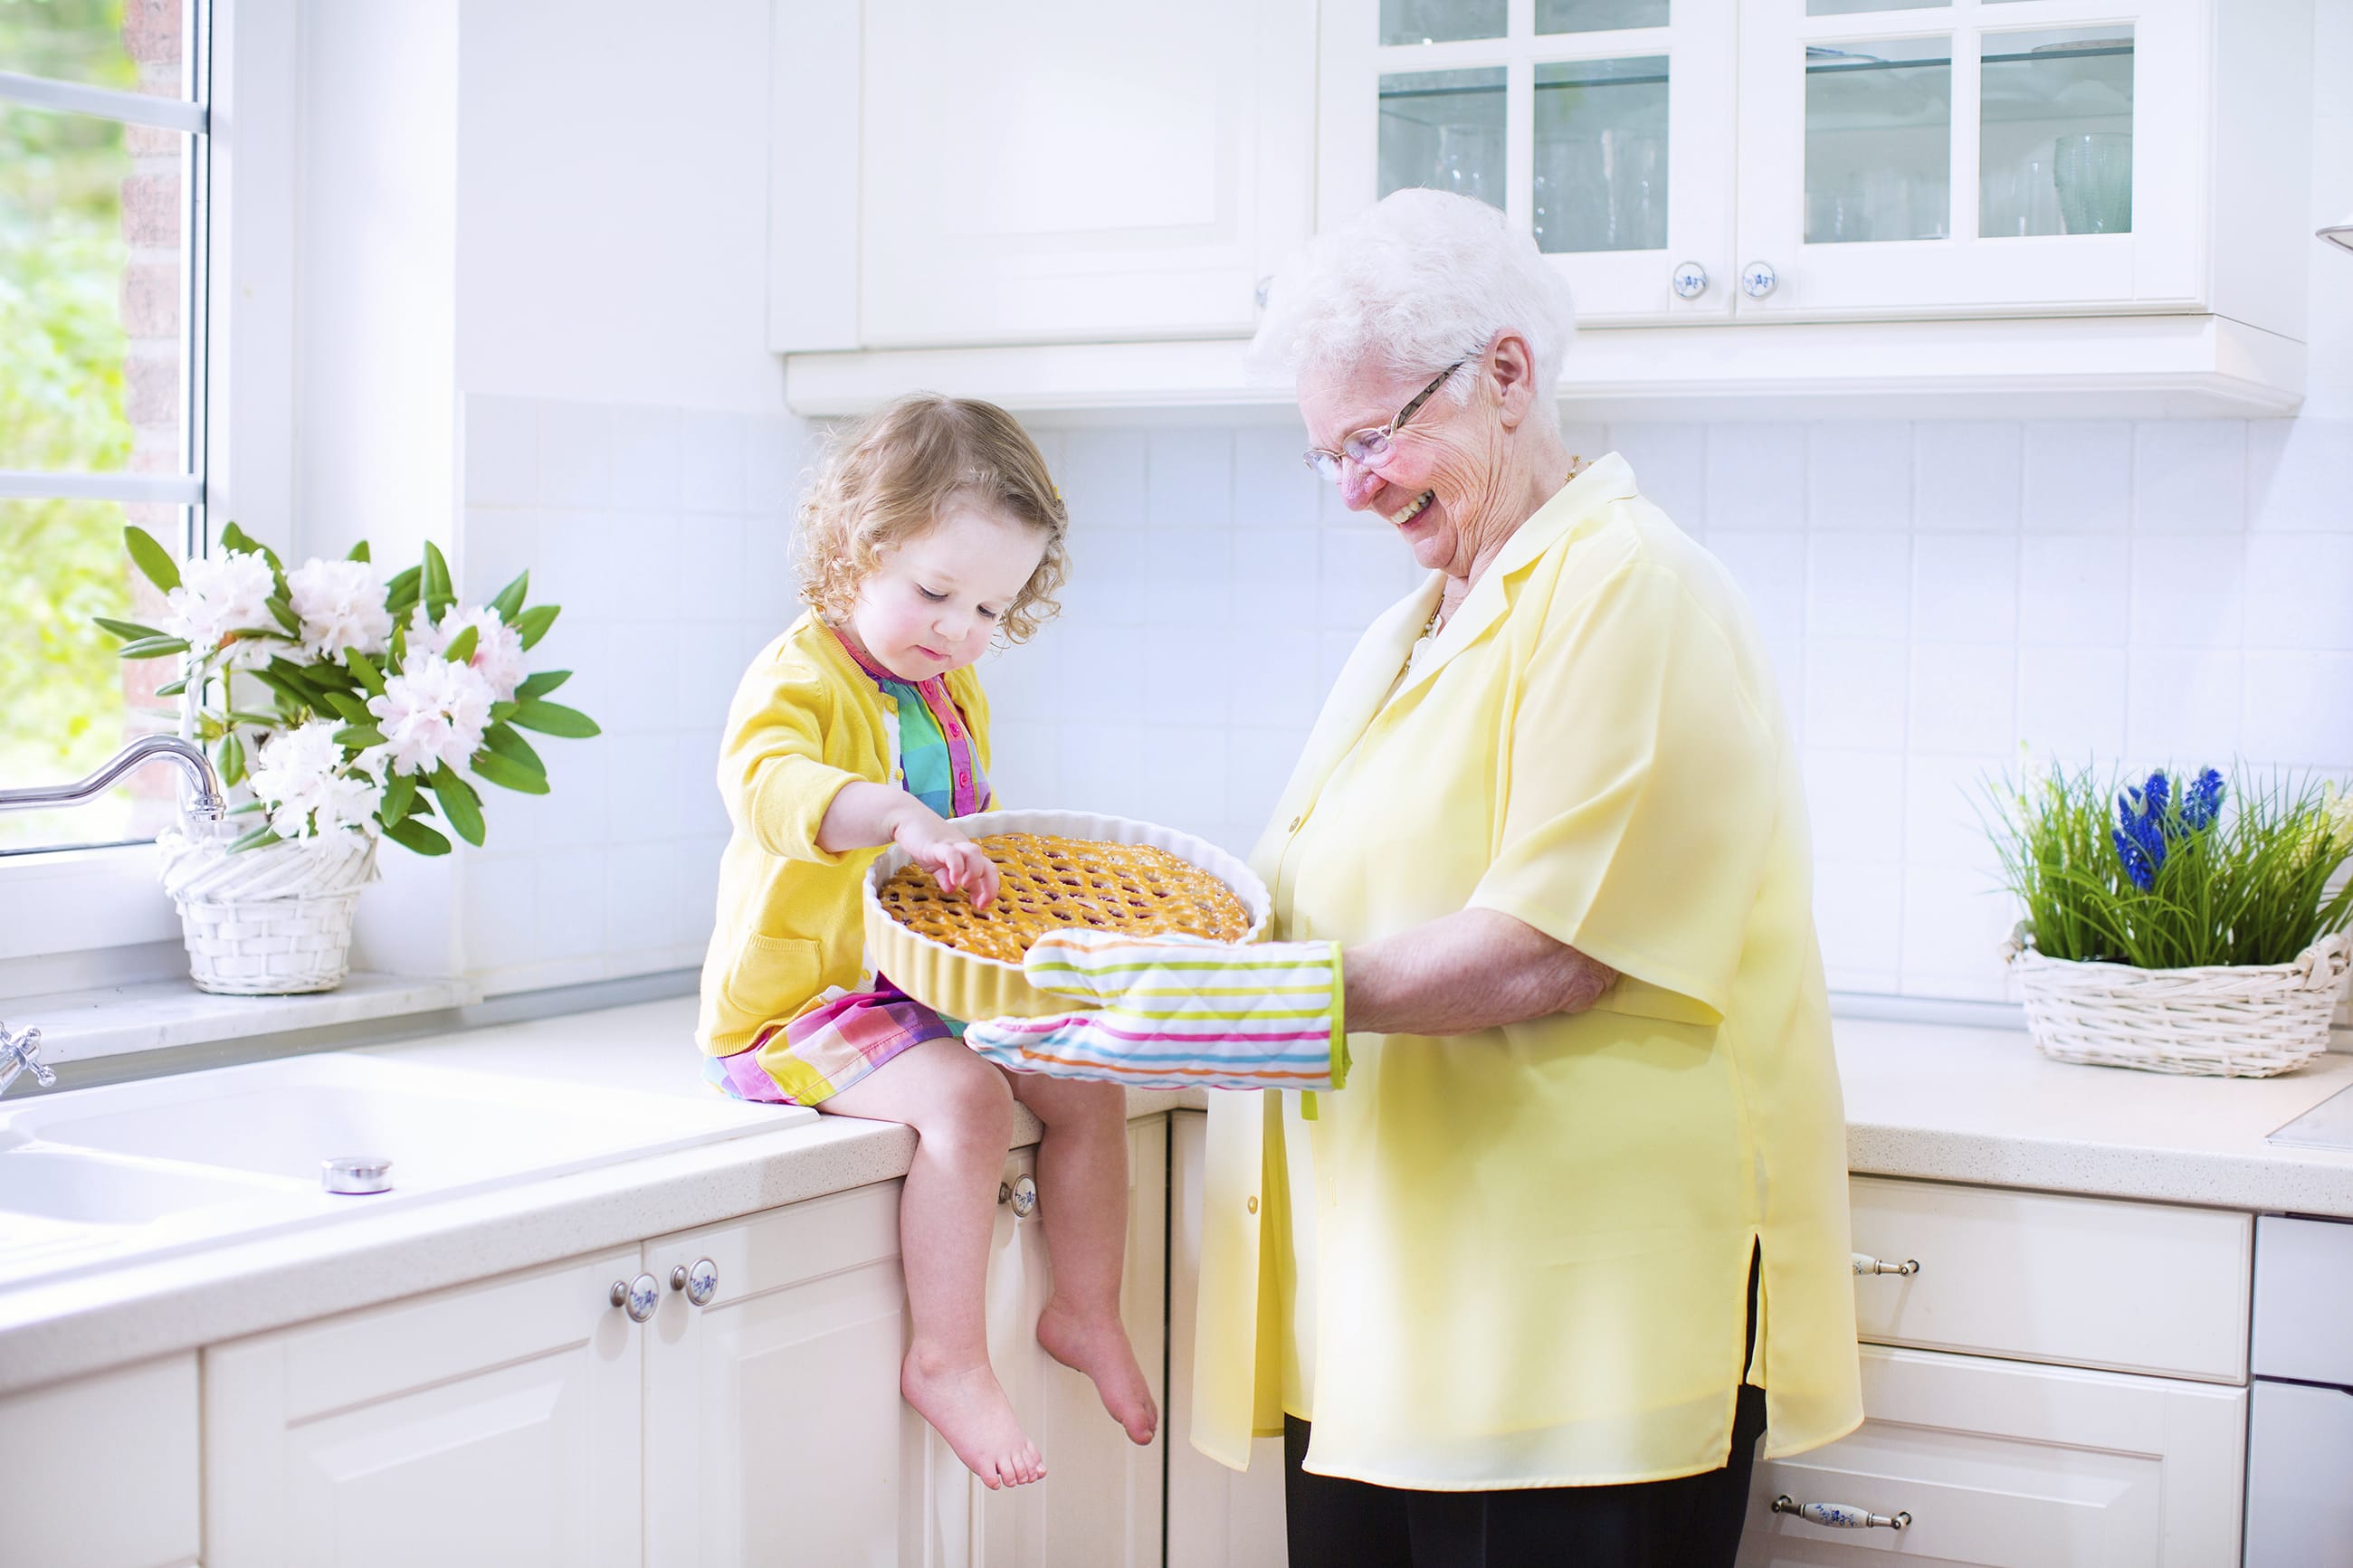 Regali fai da te per la festa dei nonni: idee curiose e low cost